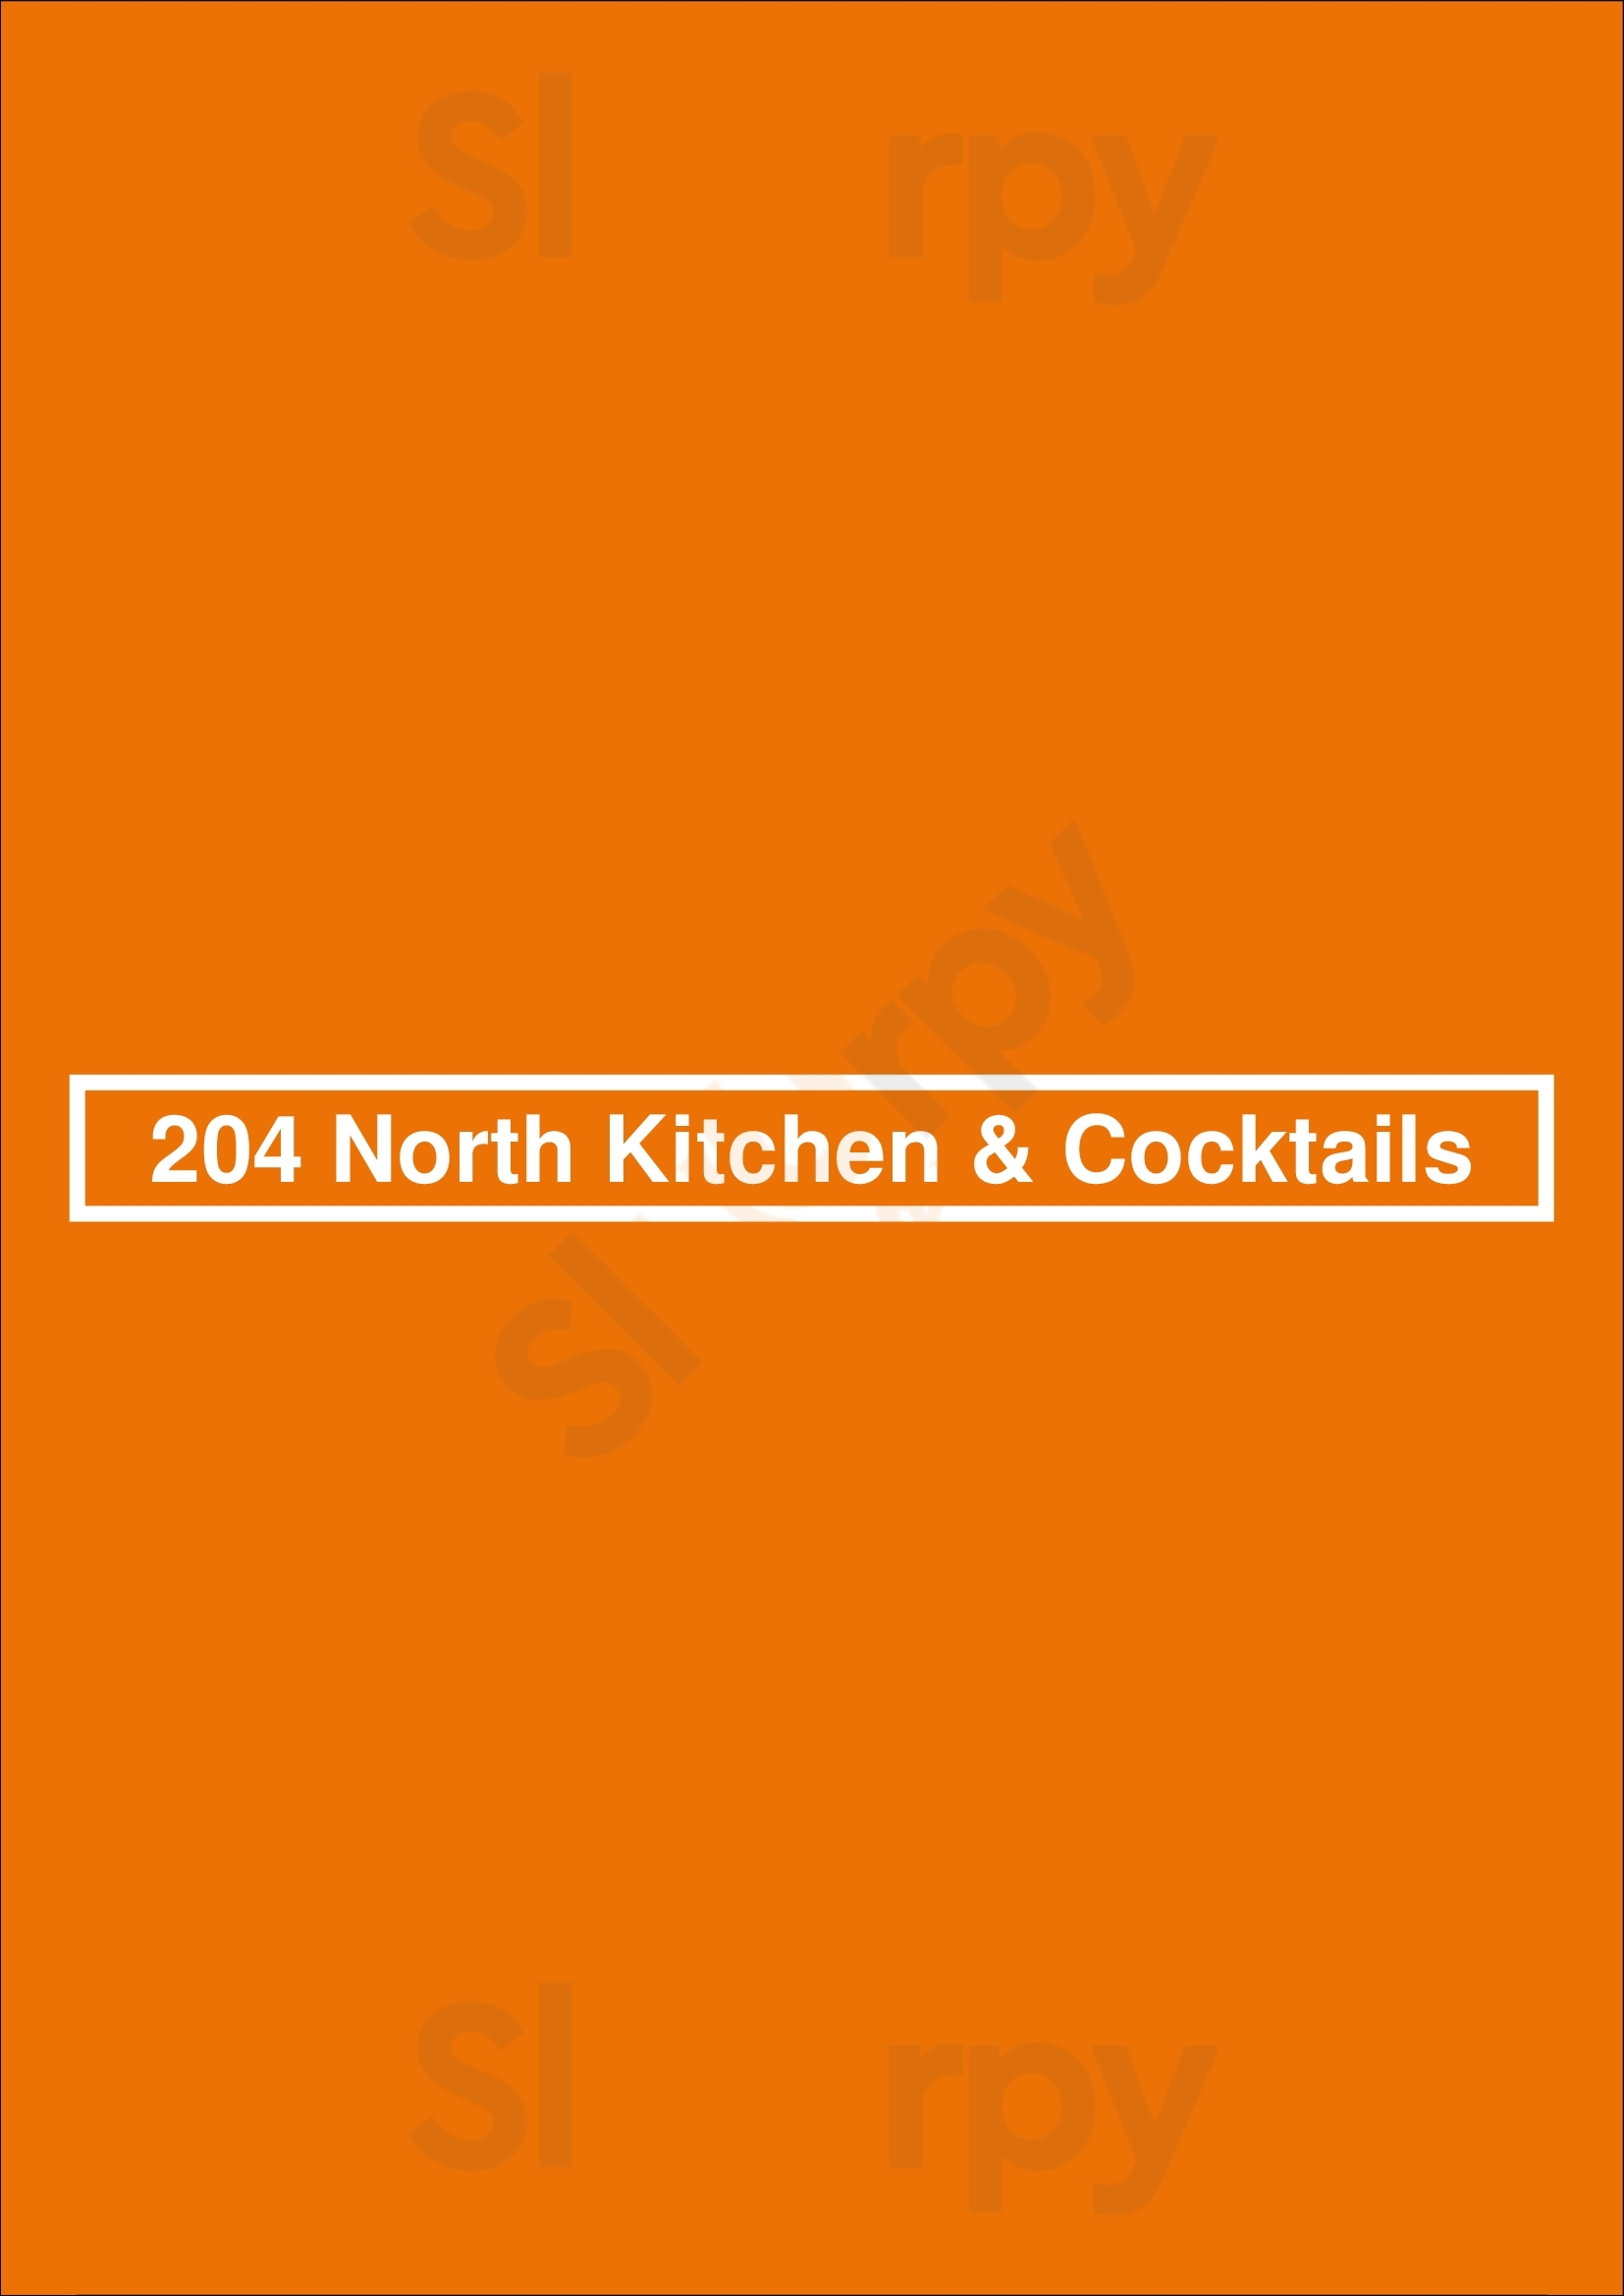 204 North Kitchen & Cocktails Charlotte Menu - 1